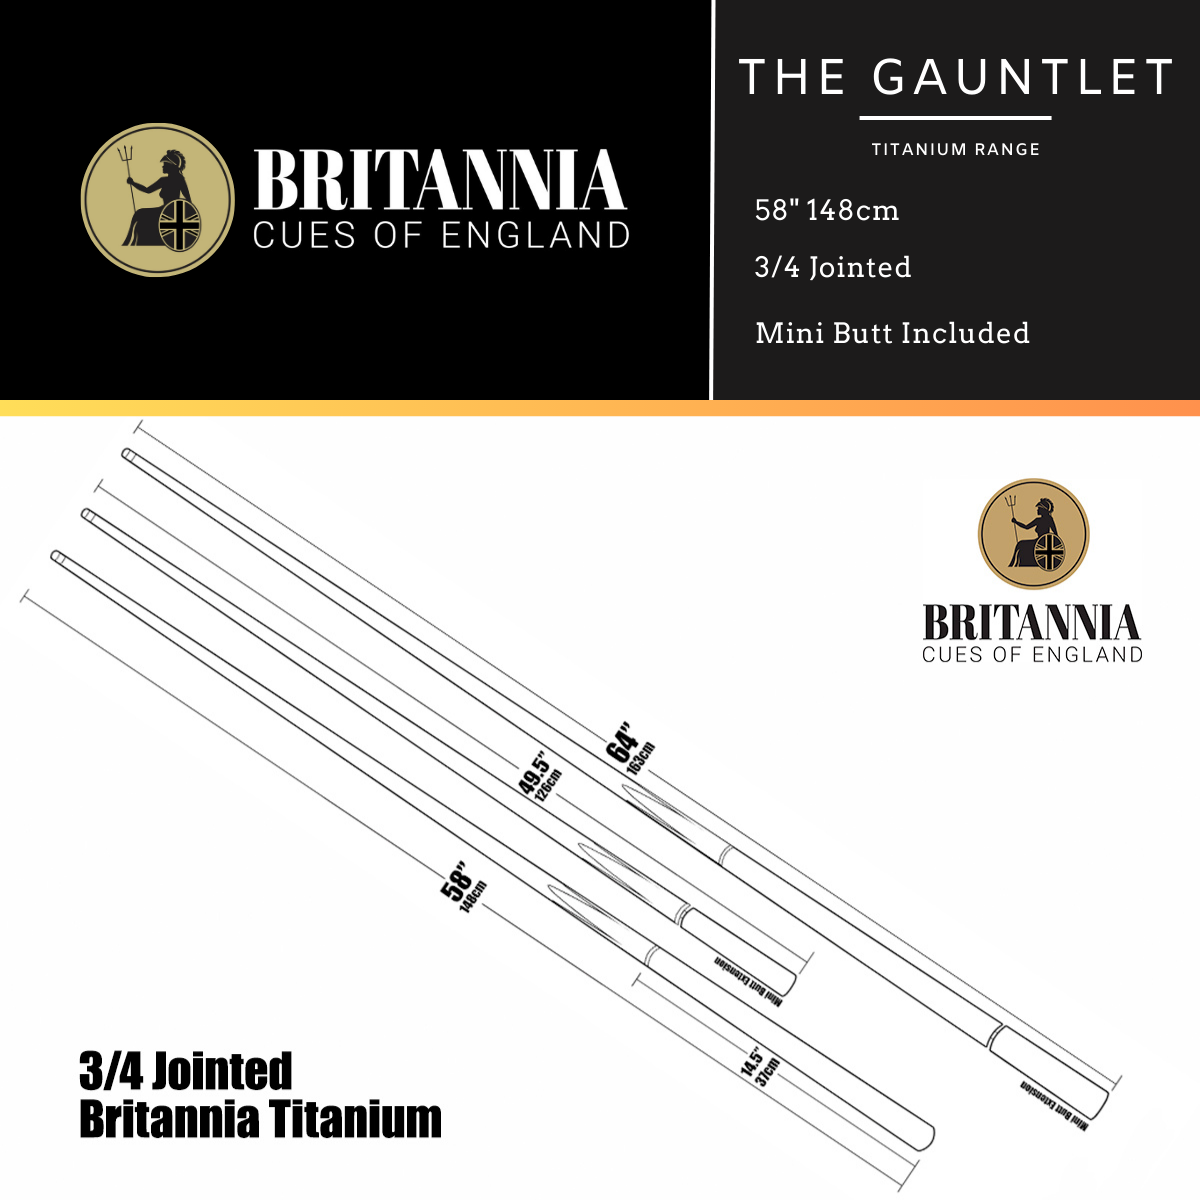 Britannia 3/4 Jointed Gauntlet Titanium Snooker Cue